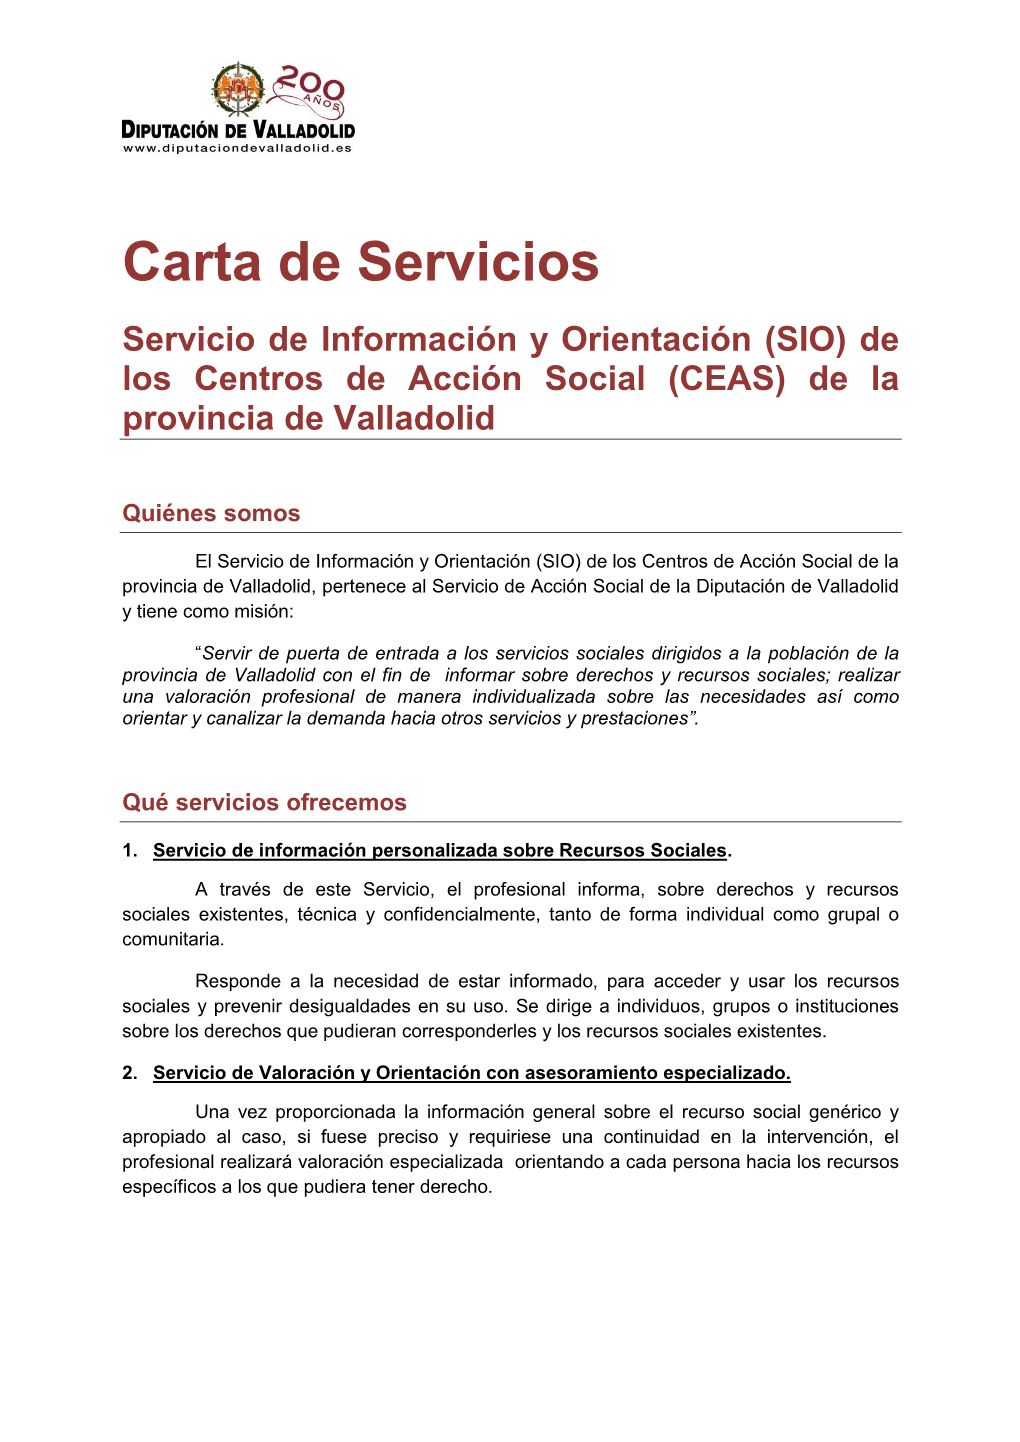 Carta De Servicios Servicio De Información Y Orientación (SIO) De Los Centros De Acción Social (CEAS) De La Provincia De Valladolid